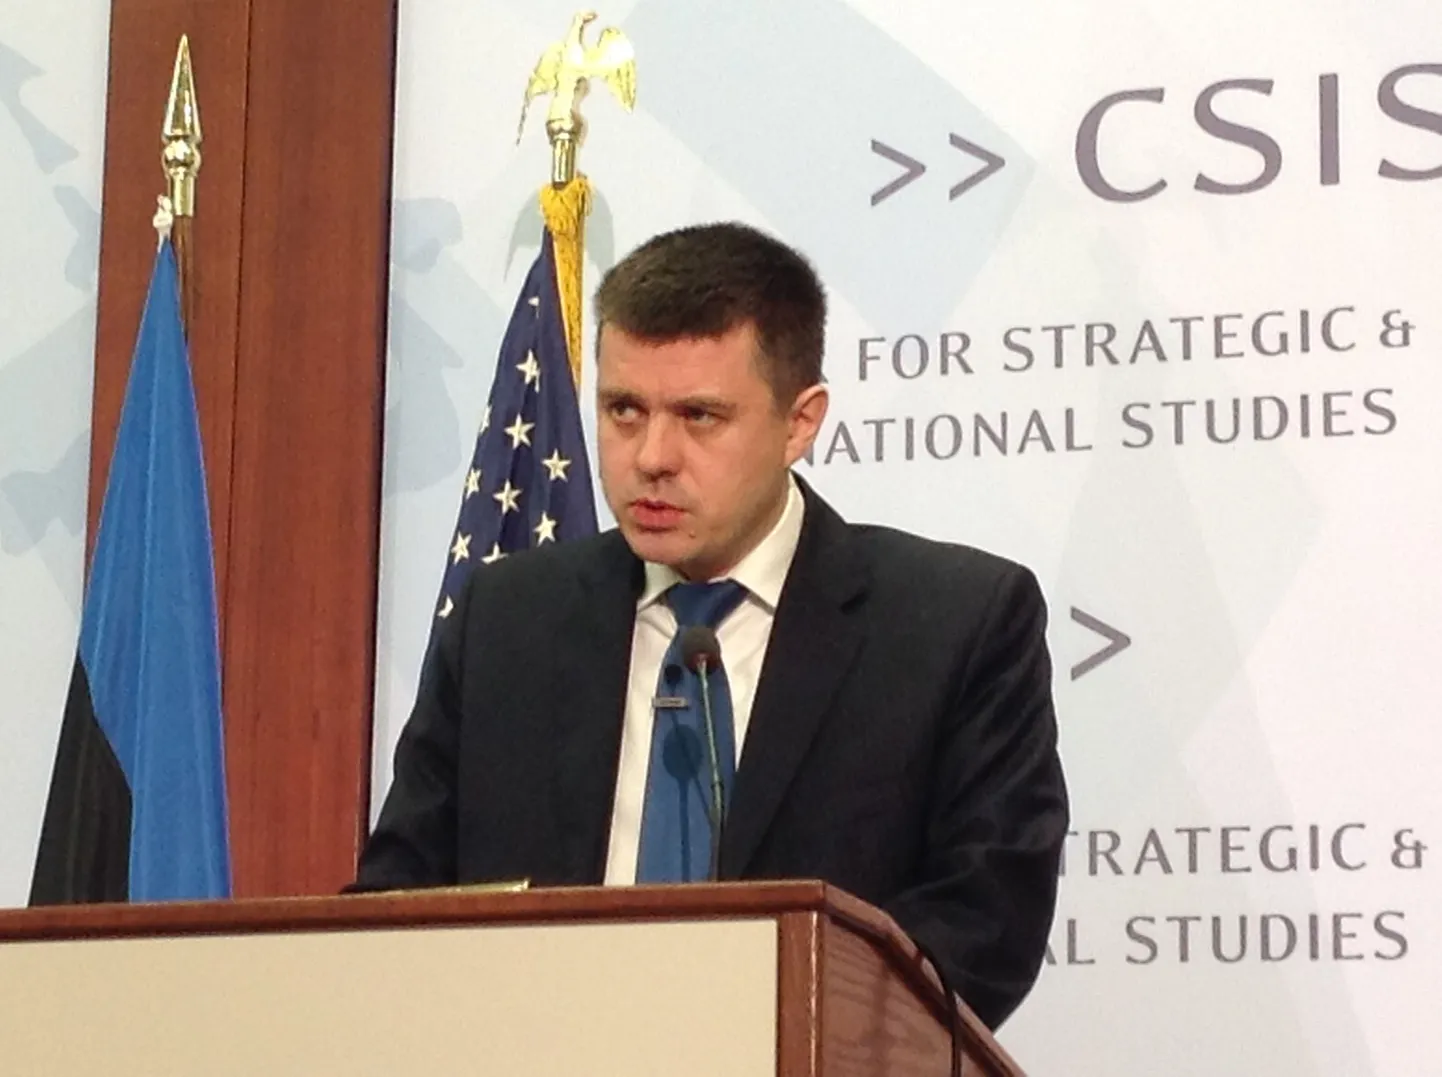 Министр обороны Урмас Рейнсалу выступил сегодня в Вашингтоне в Международном центре стратегических исследований